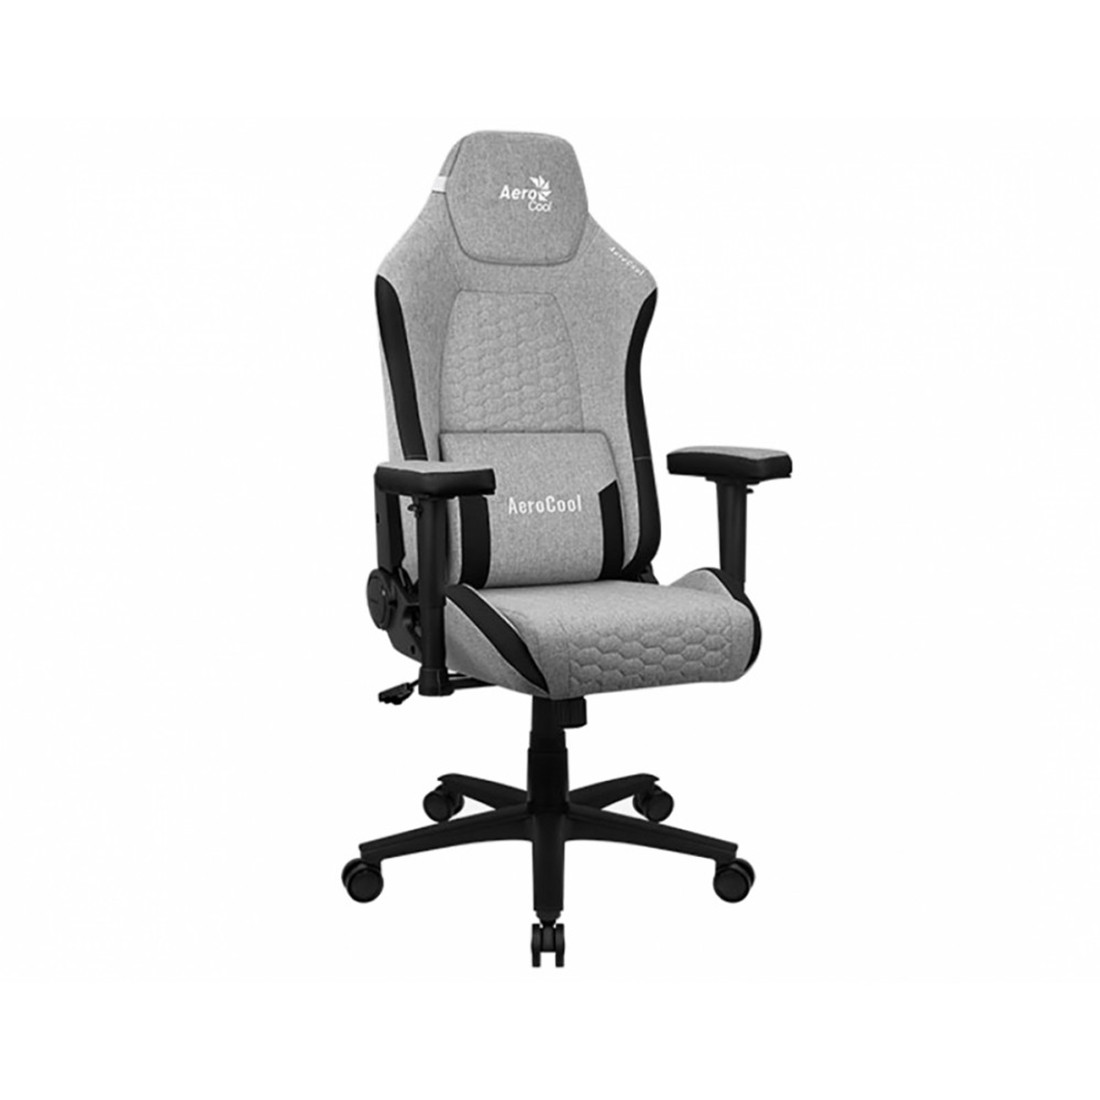 Игровое компьютерное кресло Aerocool Crown Ash Grey, фото 1